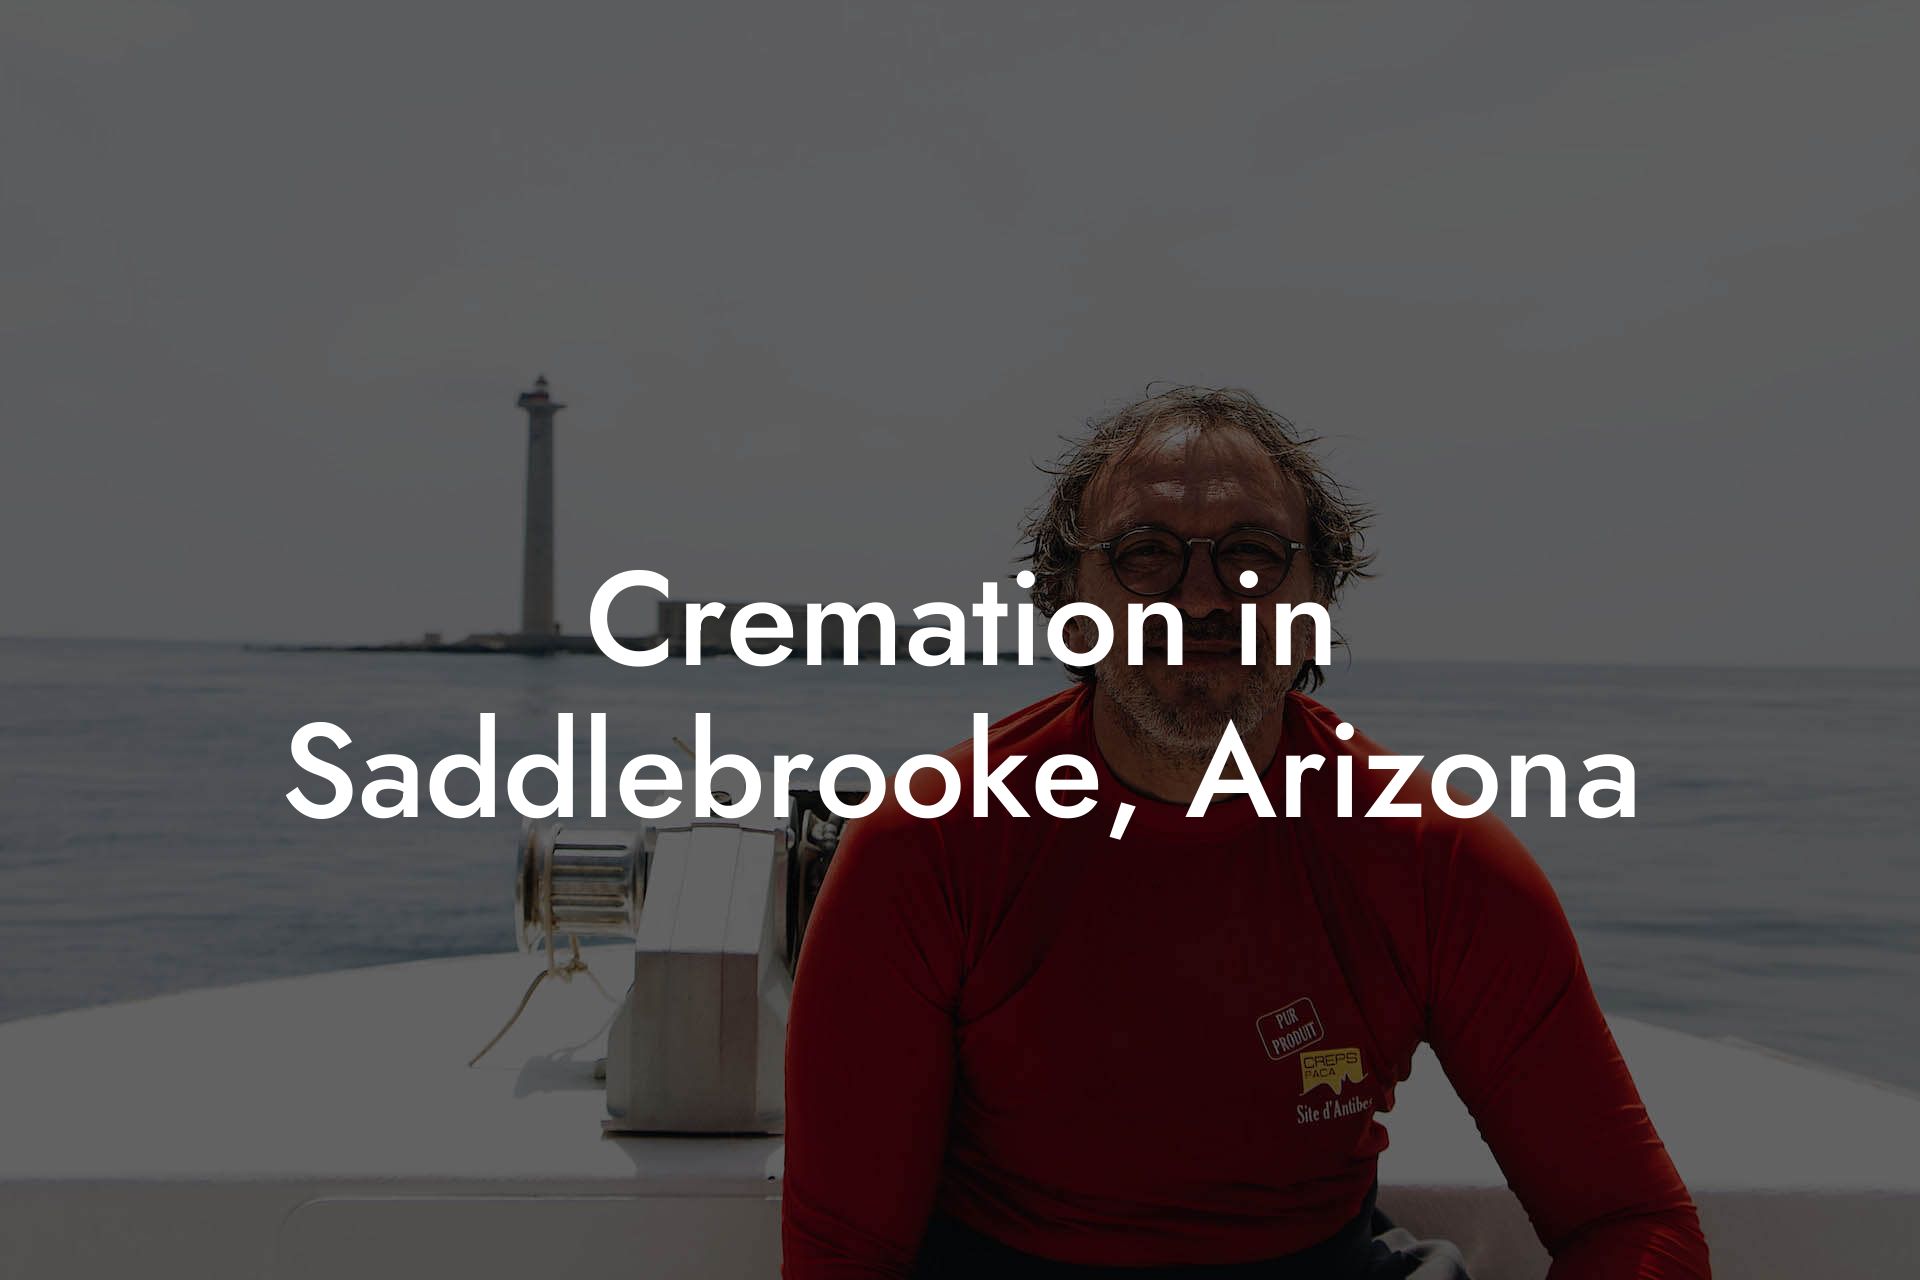 Cremation in Saddlebrooke, Arizona